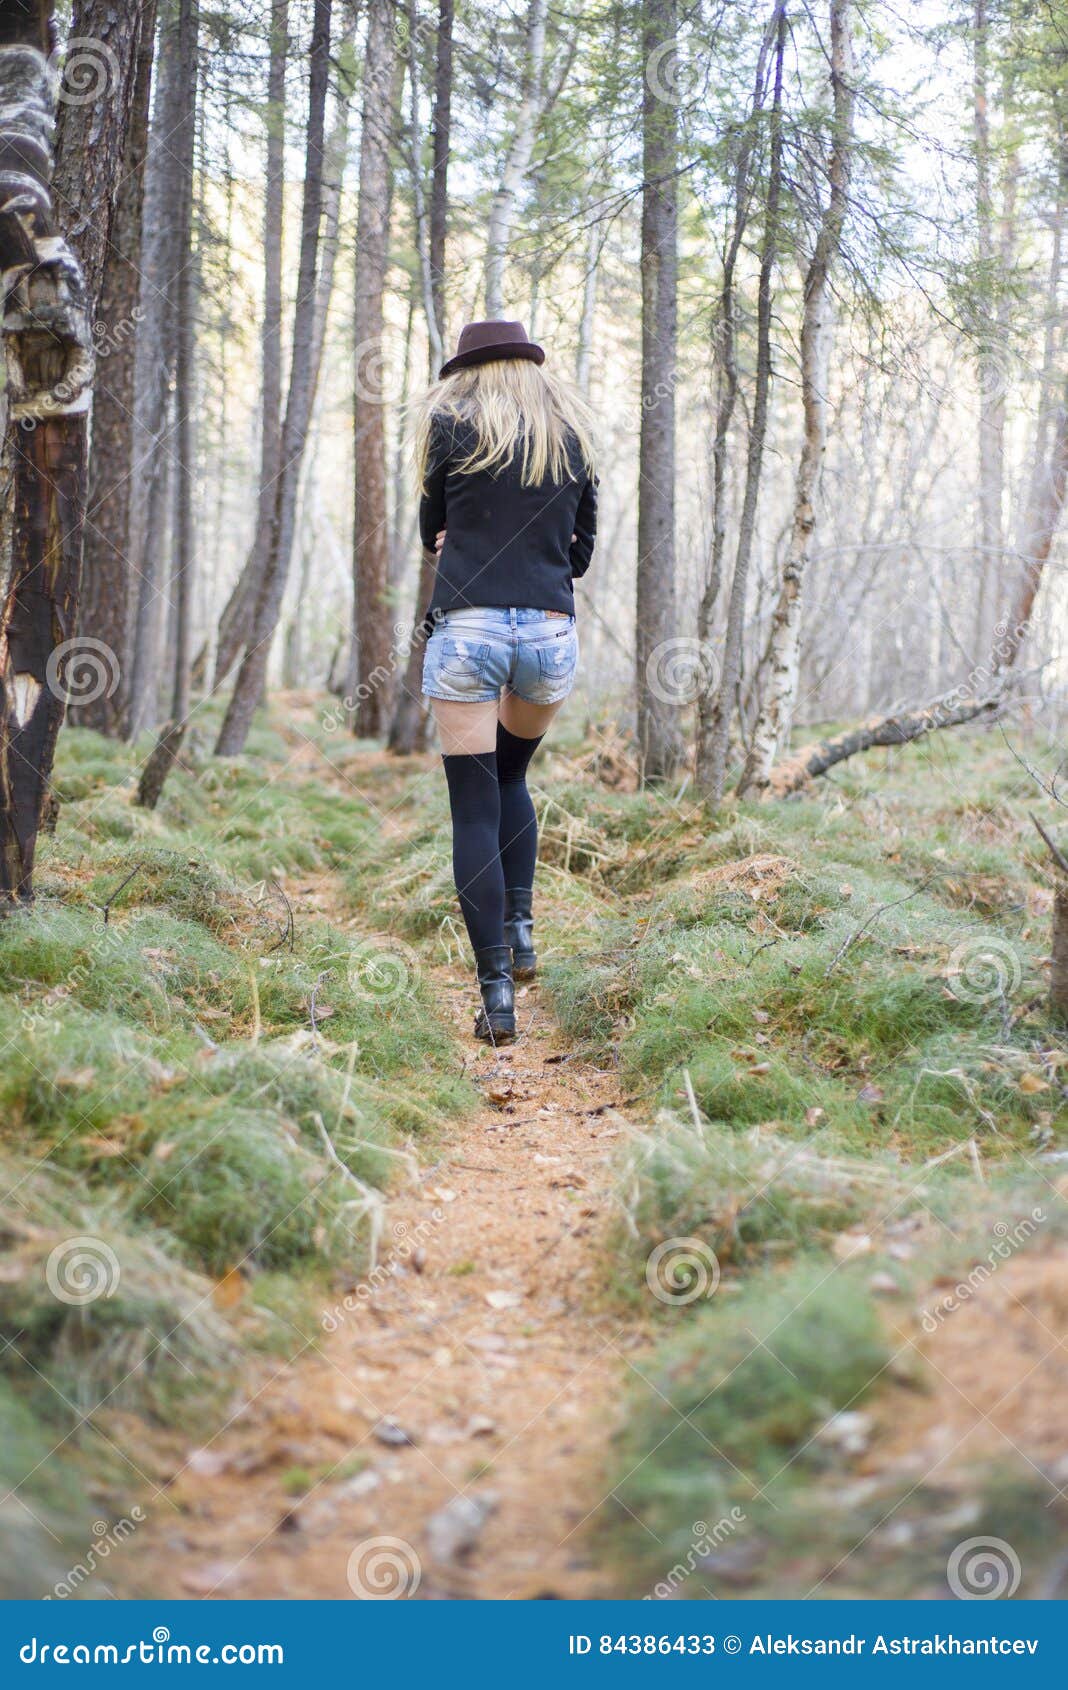 Девушка пошла пописать. Девушка испражняется в лесу. Женщина гуляет в лесу. Большие девочки в лесу. Девочка покакал в лесу.